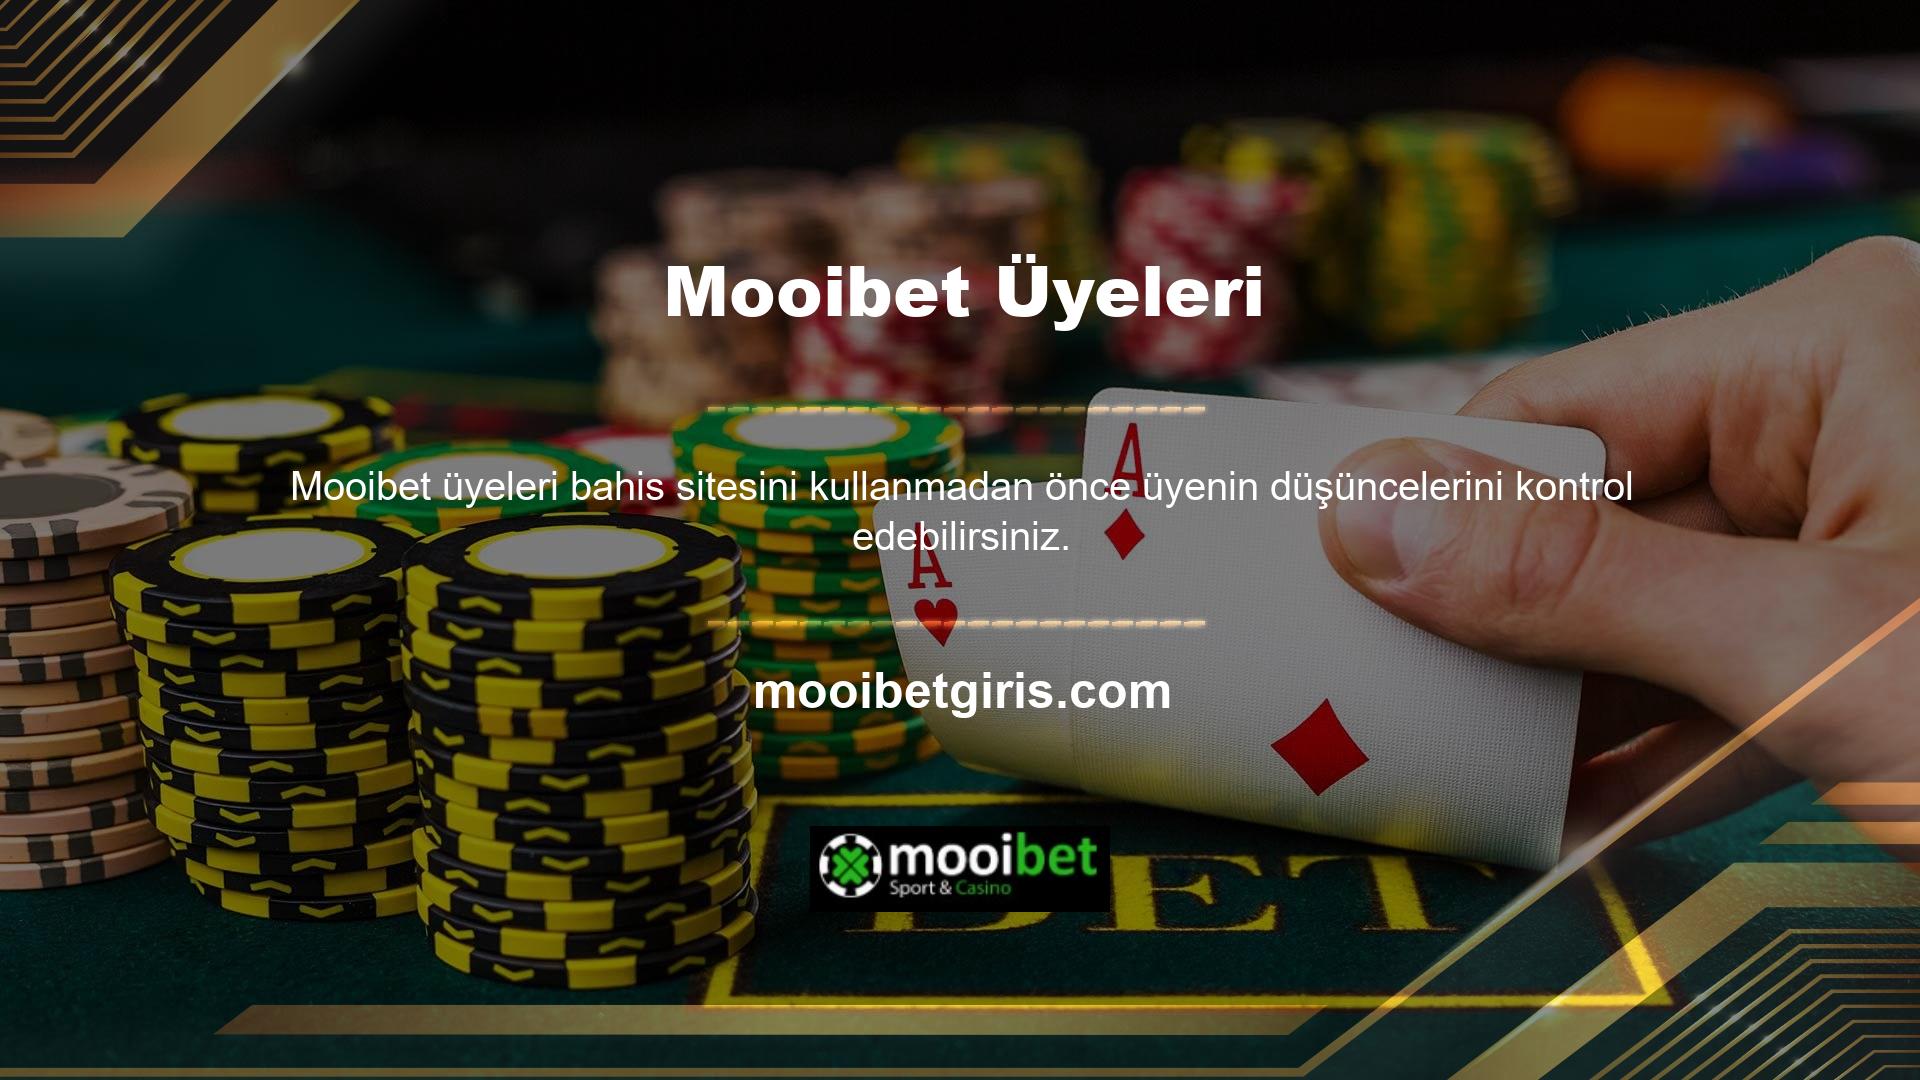 Mooibet, en popüler çevrimiçi oyun markalarından biridir